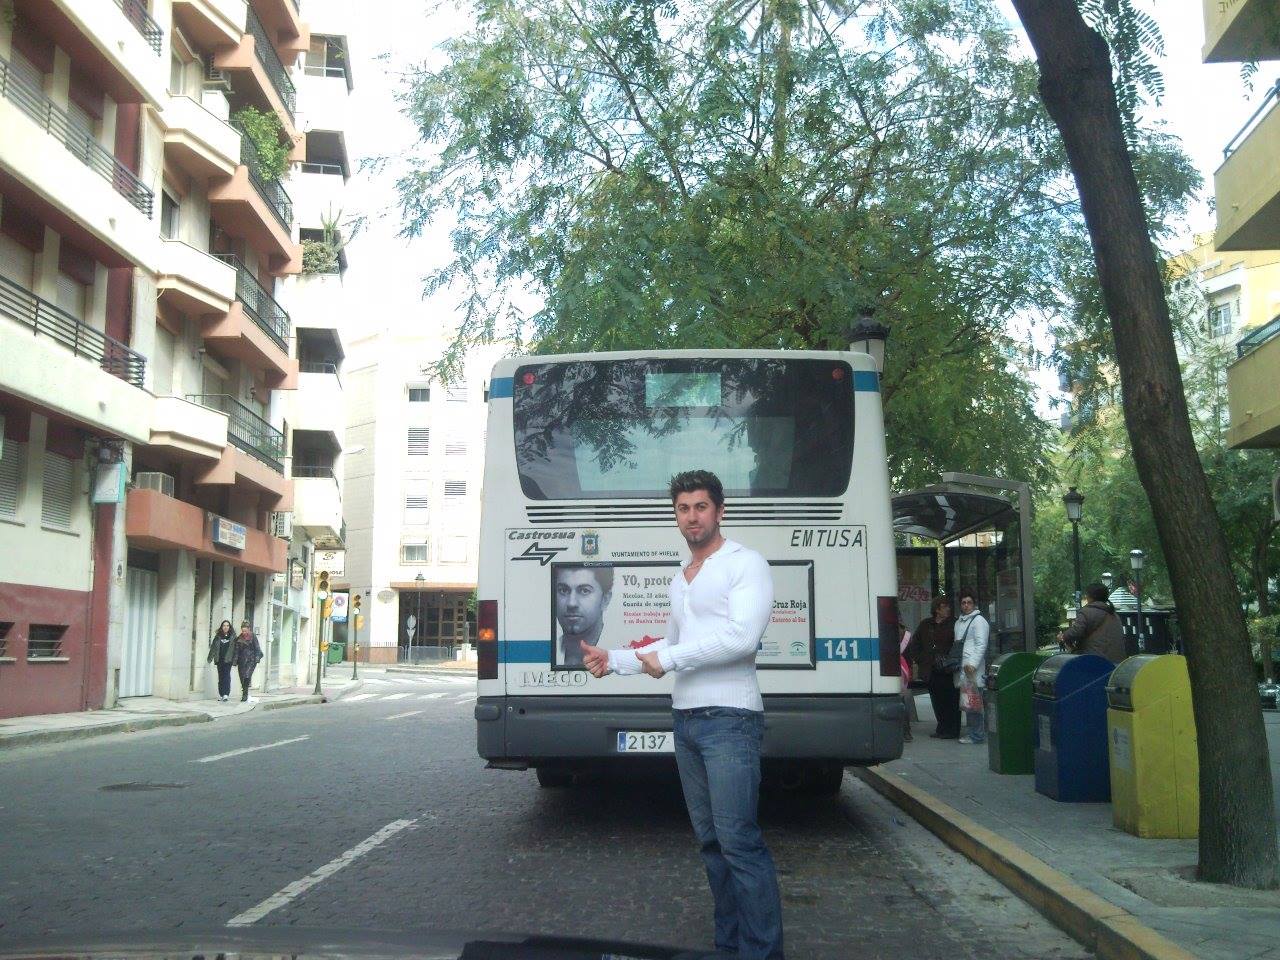 Este singurul roman din Spania a carui poza se afla pe toate autobuzele din Peninsula Iberica